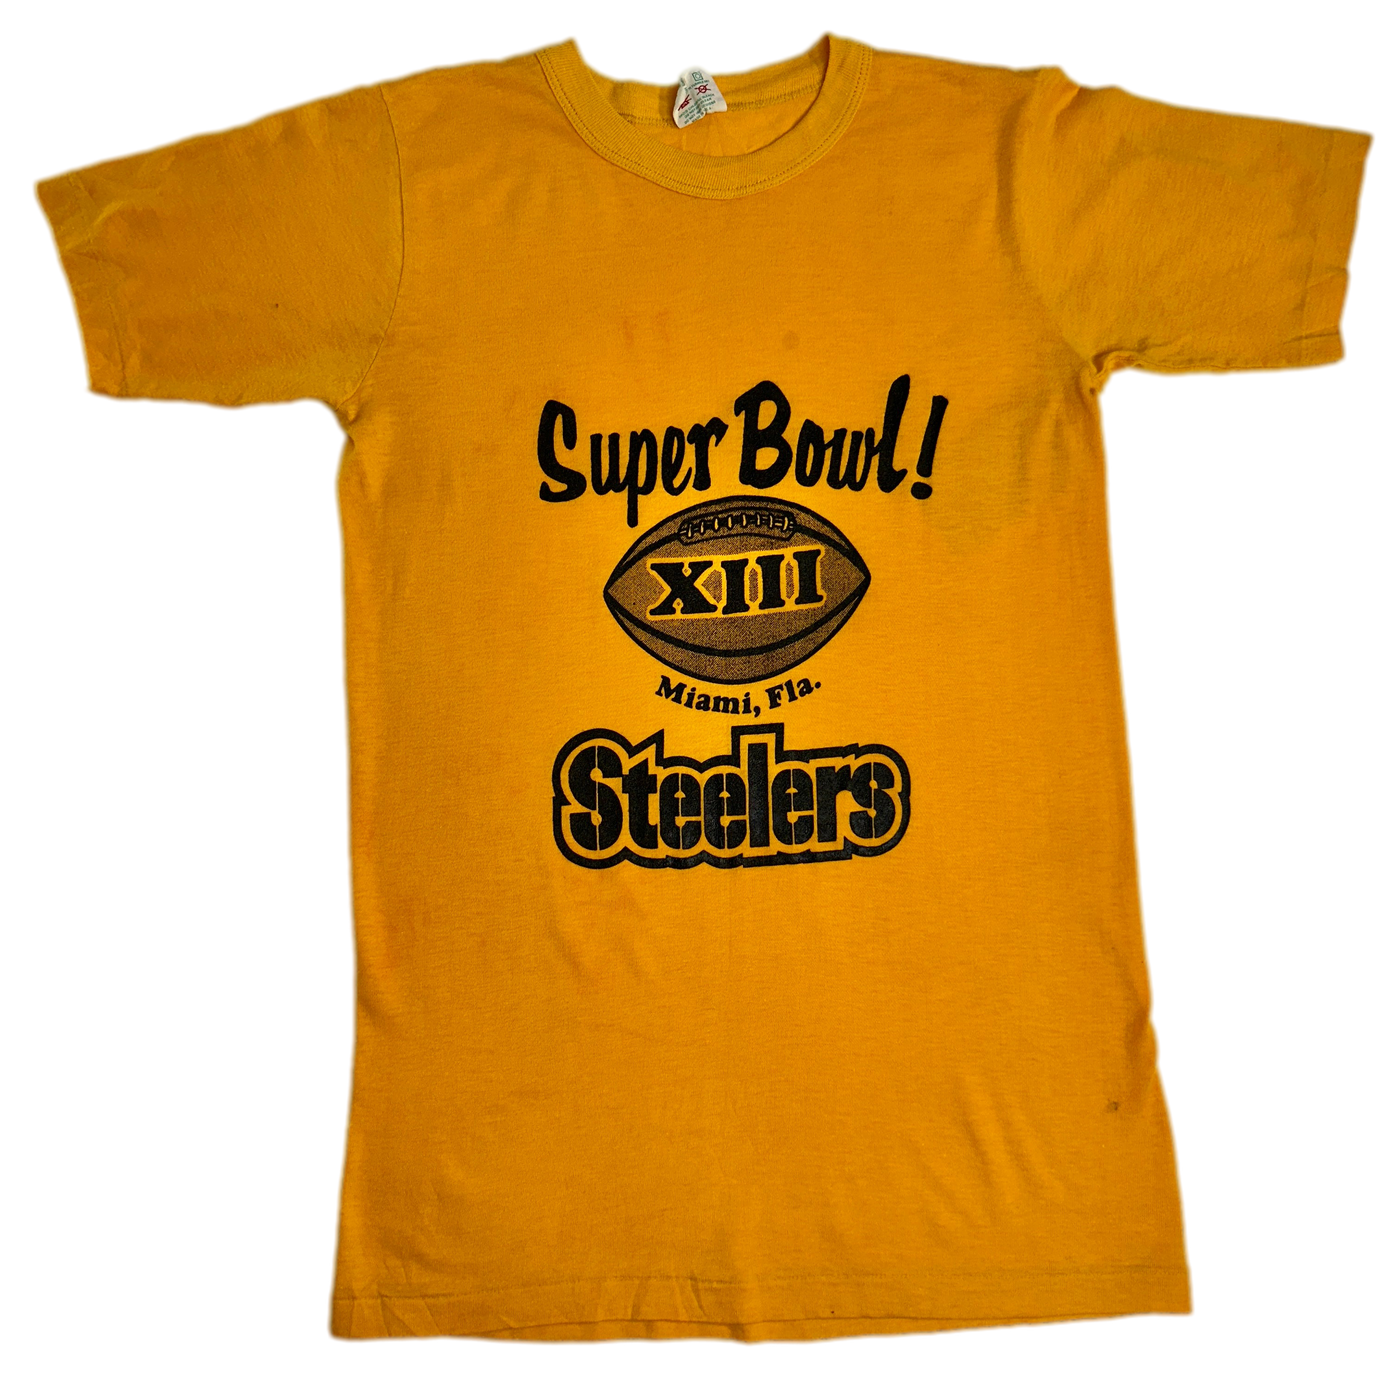 '79 Super Bowl Steelers NFL Sports T-Shirt sz XS